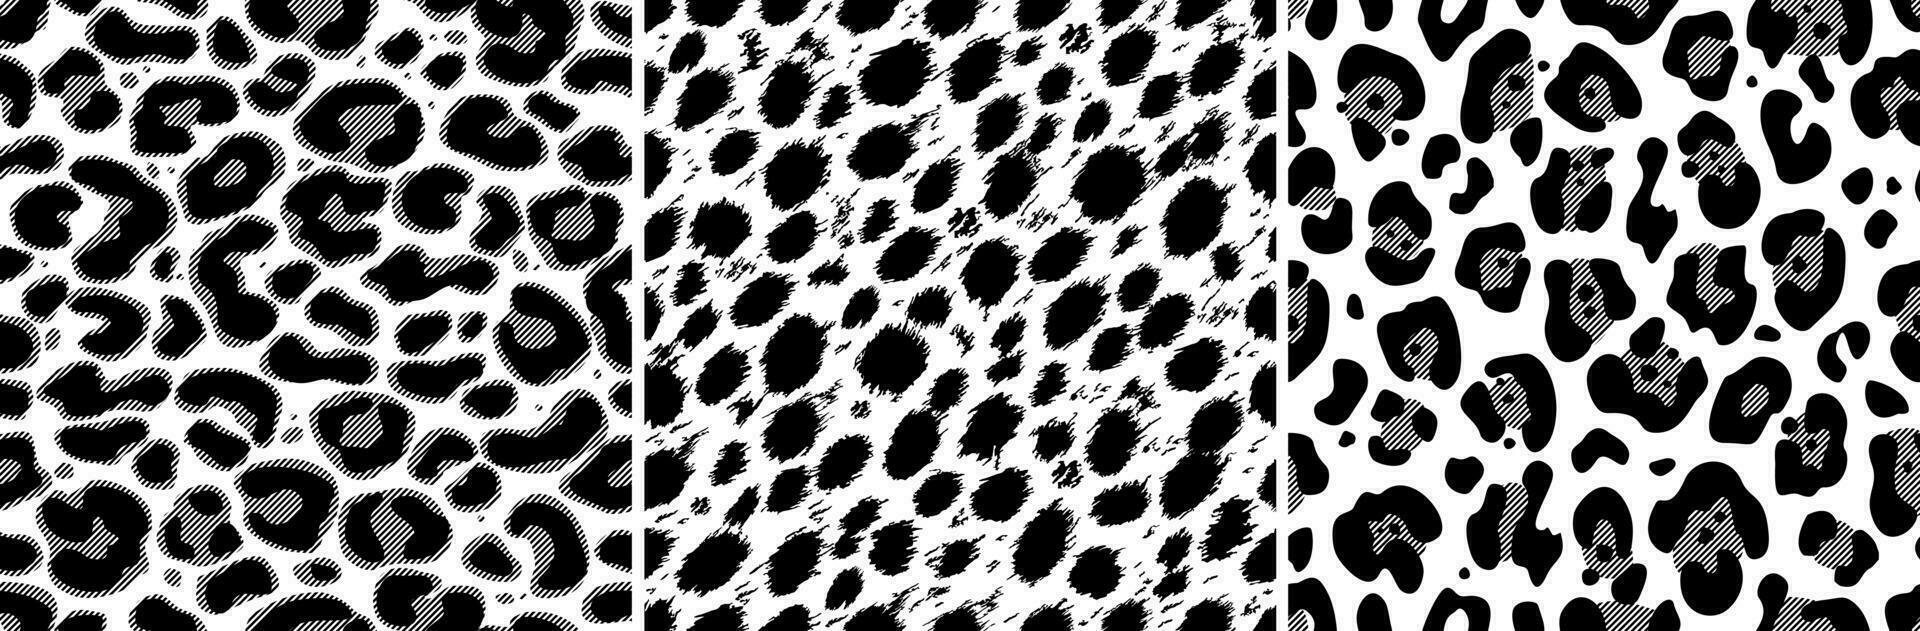 animal sin costura patrones colocar. jaguar, leopardo, leopardo piel textura en negro y blanco colores. estilizado diseño para el Internet y impresión. para textiles, papel, fondo de pantalla. ilustrado vector clipart.